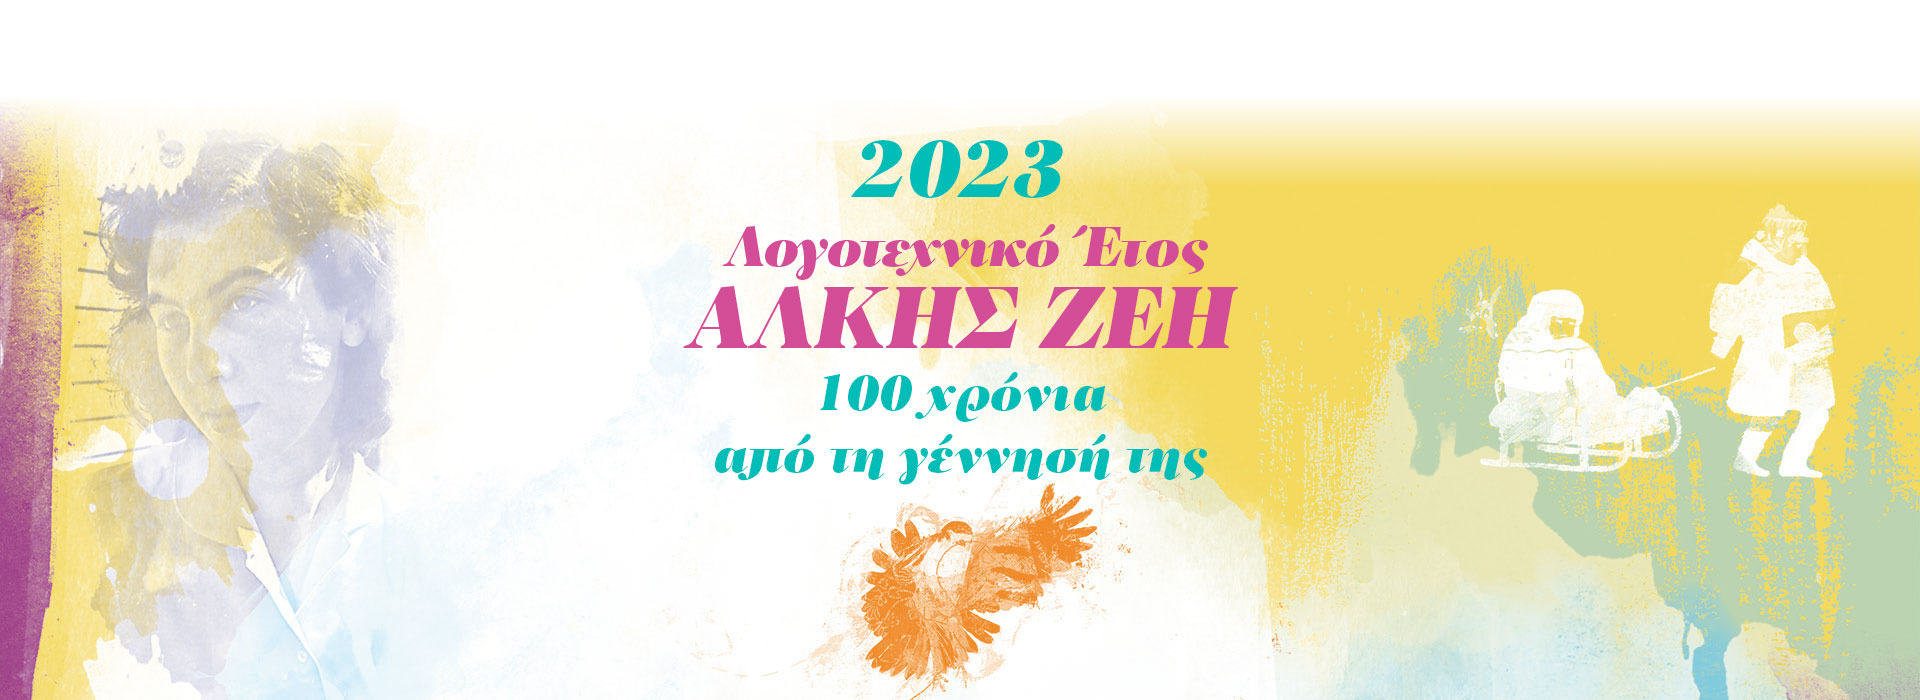 1923-2023: 100 χρόνια από τη γέννηση της Άλκης Ζέη-2